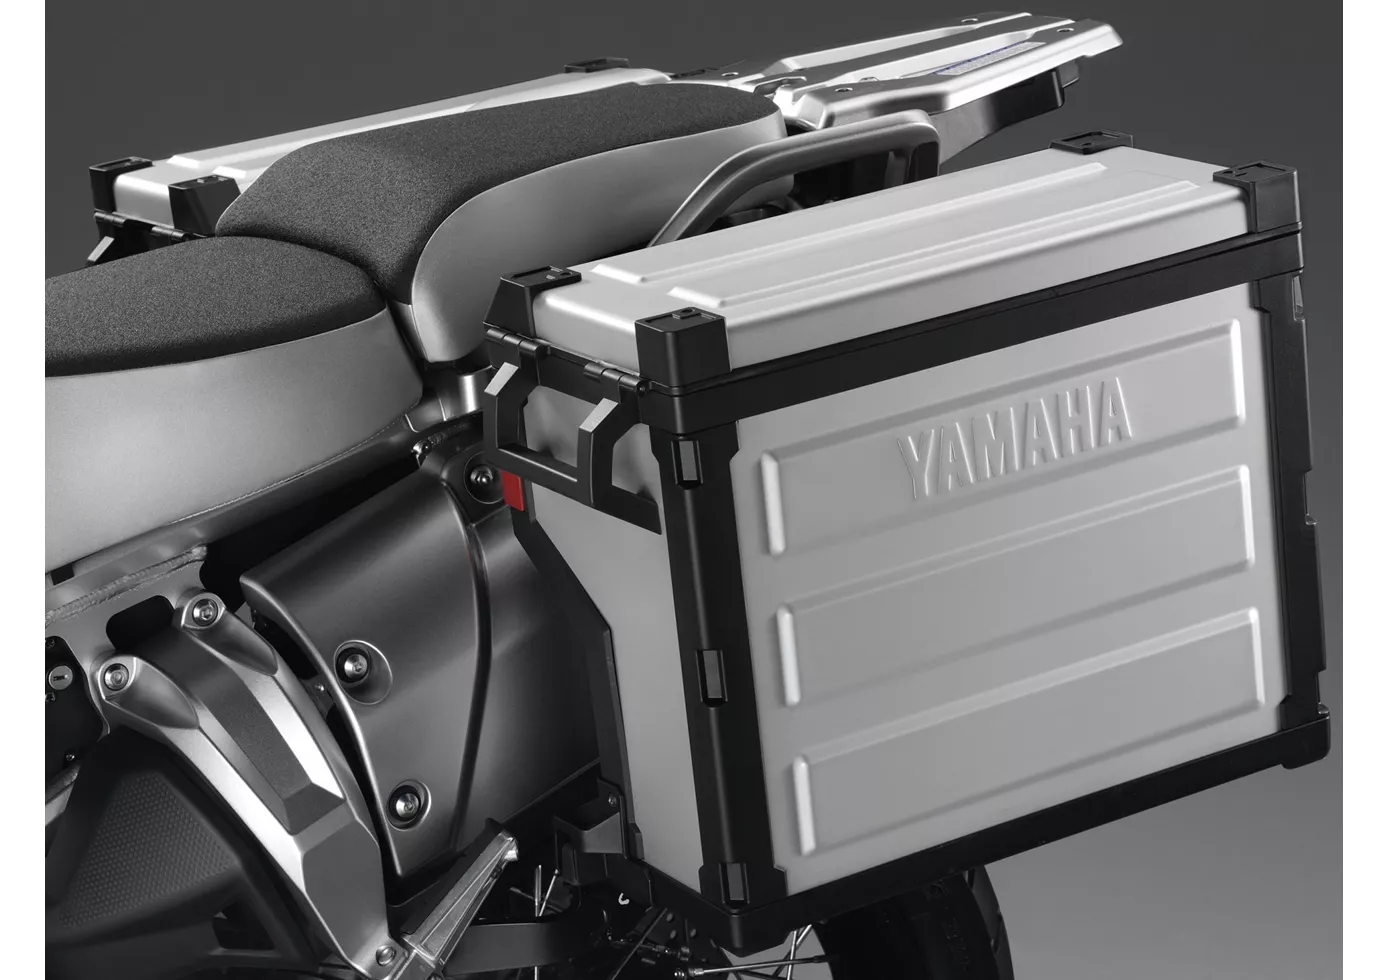 Yamaha XT1200Z Super Tenere 2016